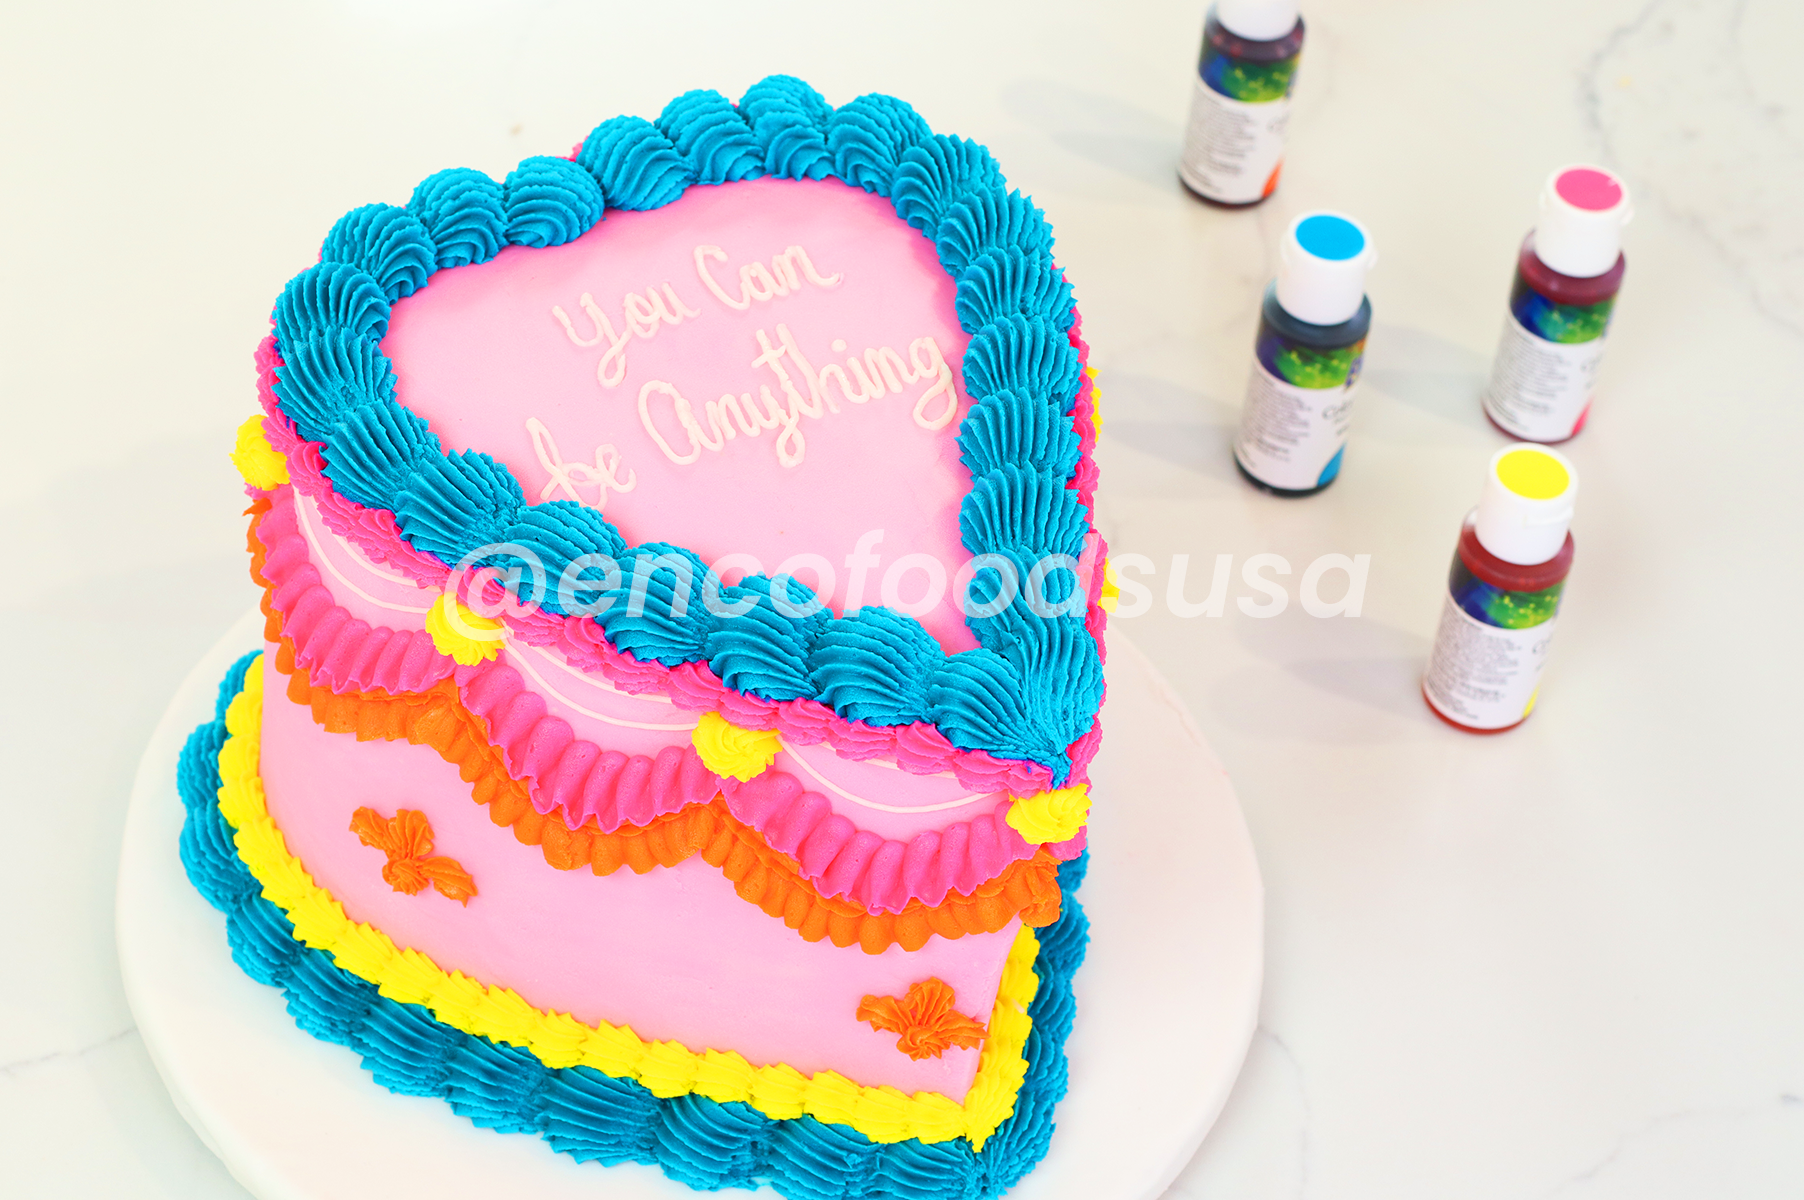 Vintage cake painted with Enco food color gels